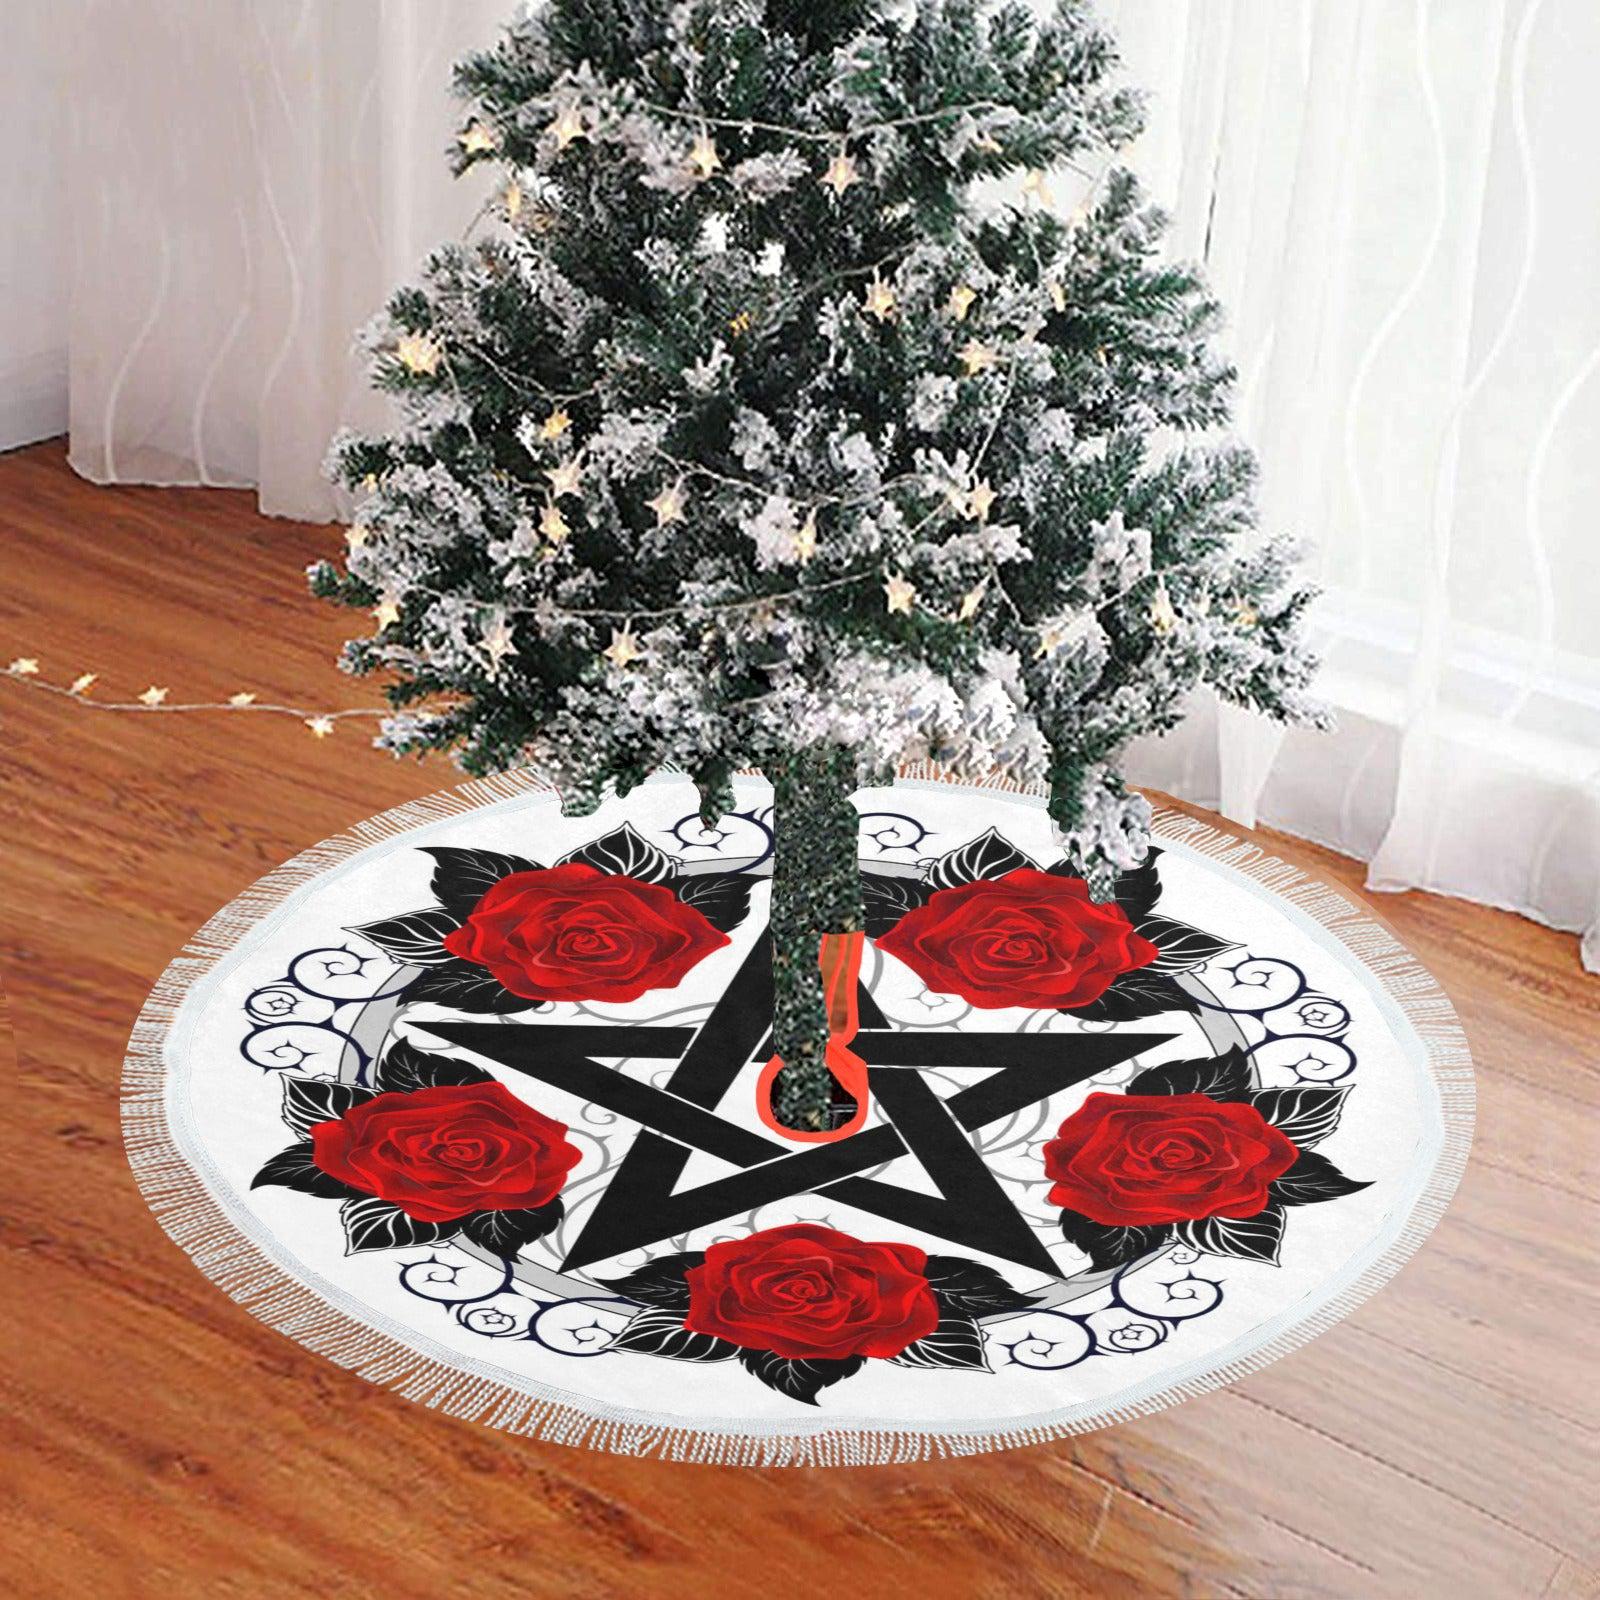 Rose pentagram Wicca Christmas Tree Skirt-MoonChildWorld